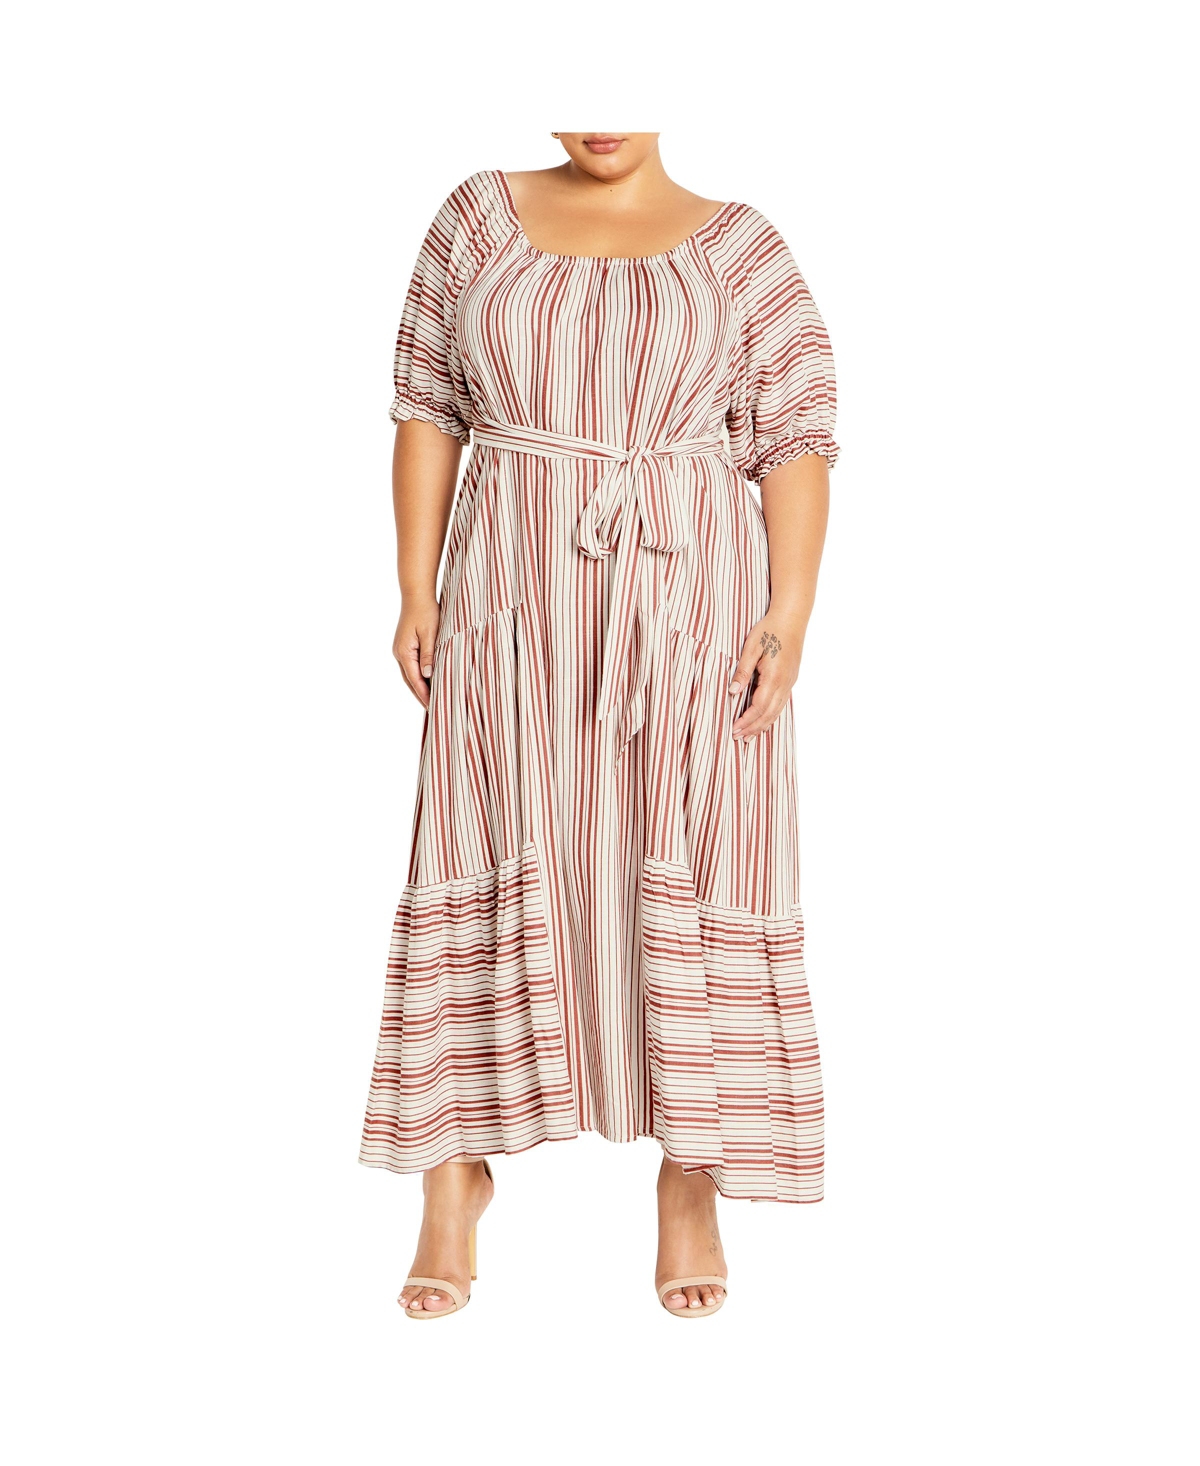 Plus Size Jemima Dress - Charm stripe